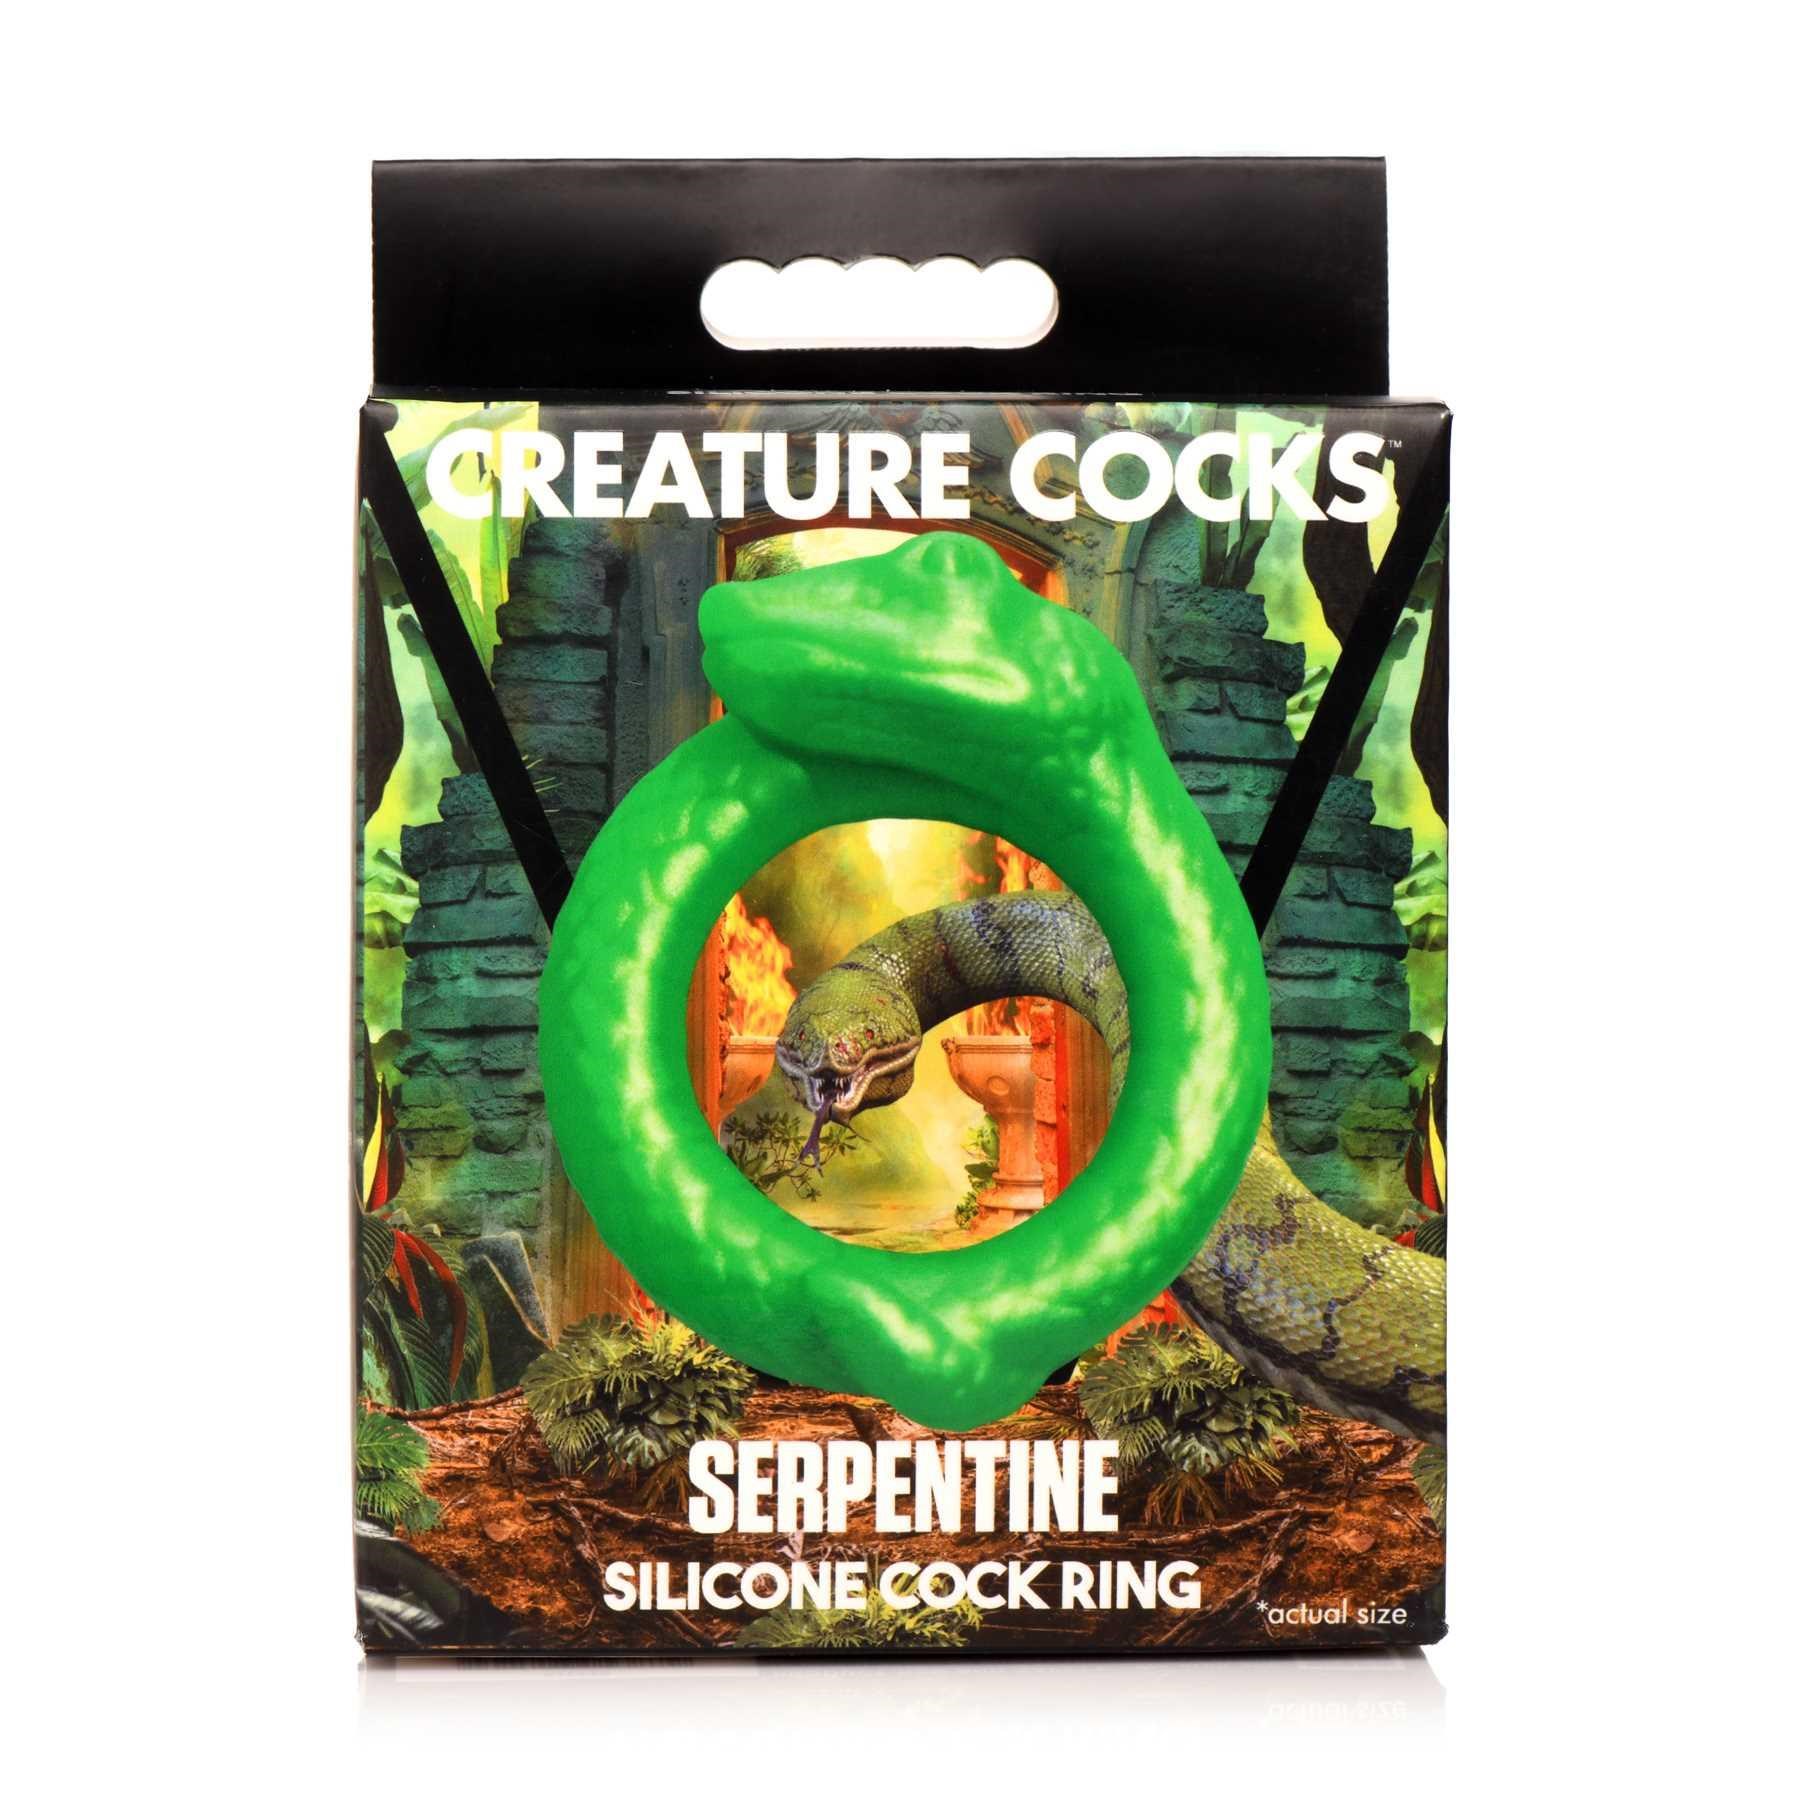 Creature Cocks Serpentine Silicone Cock Ring box